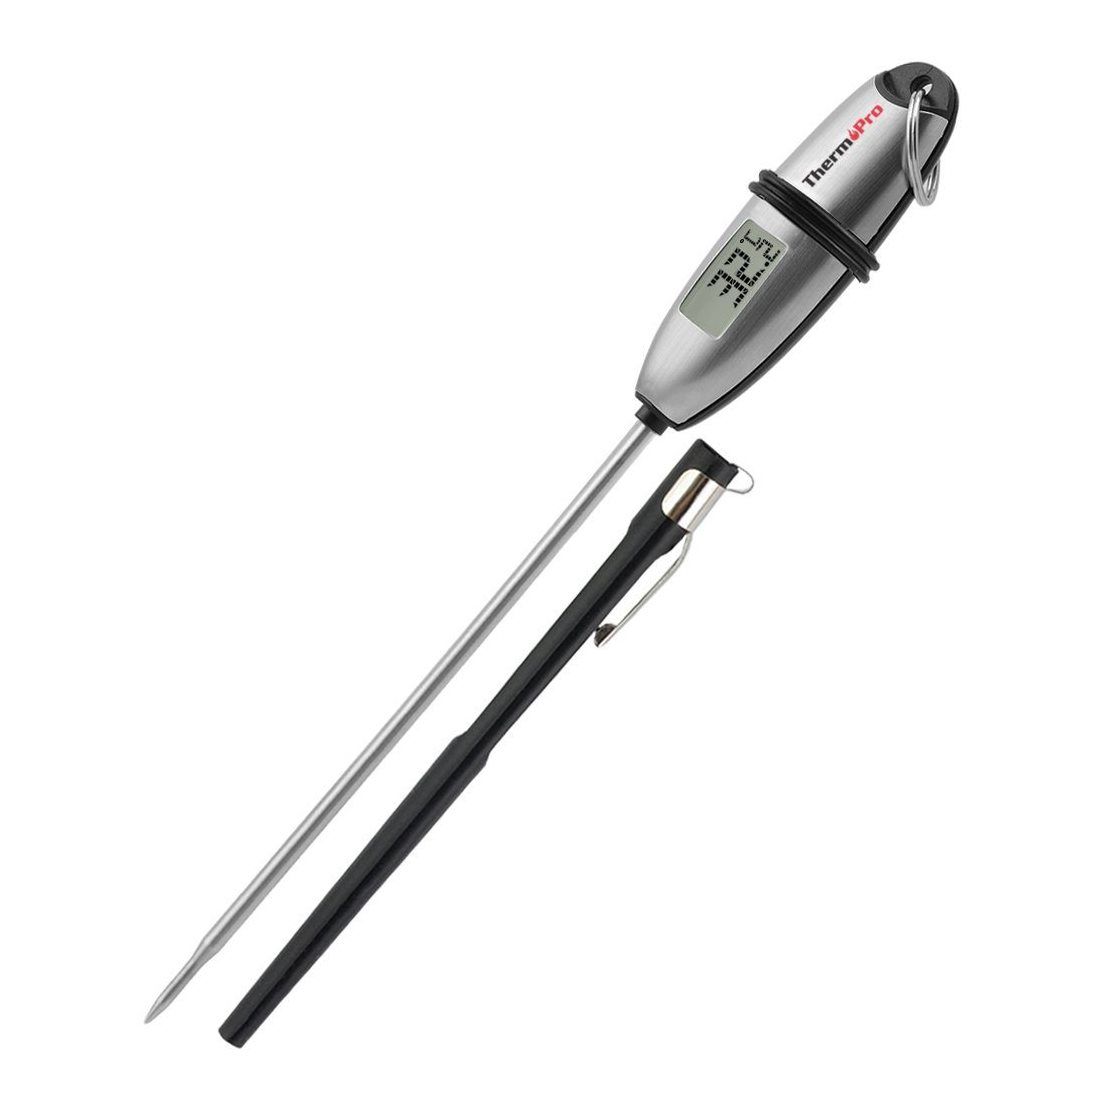 ThermoPro TP-02S Thermomètre de Cuisine Numérique en Acier Inoxydable, Sonde Anti-Corrosion, Écran LCD Digital, Thermomètre d